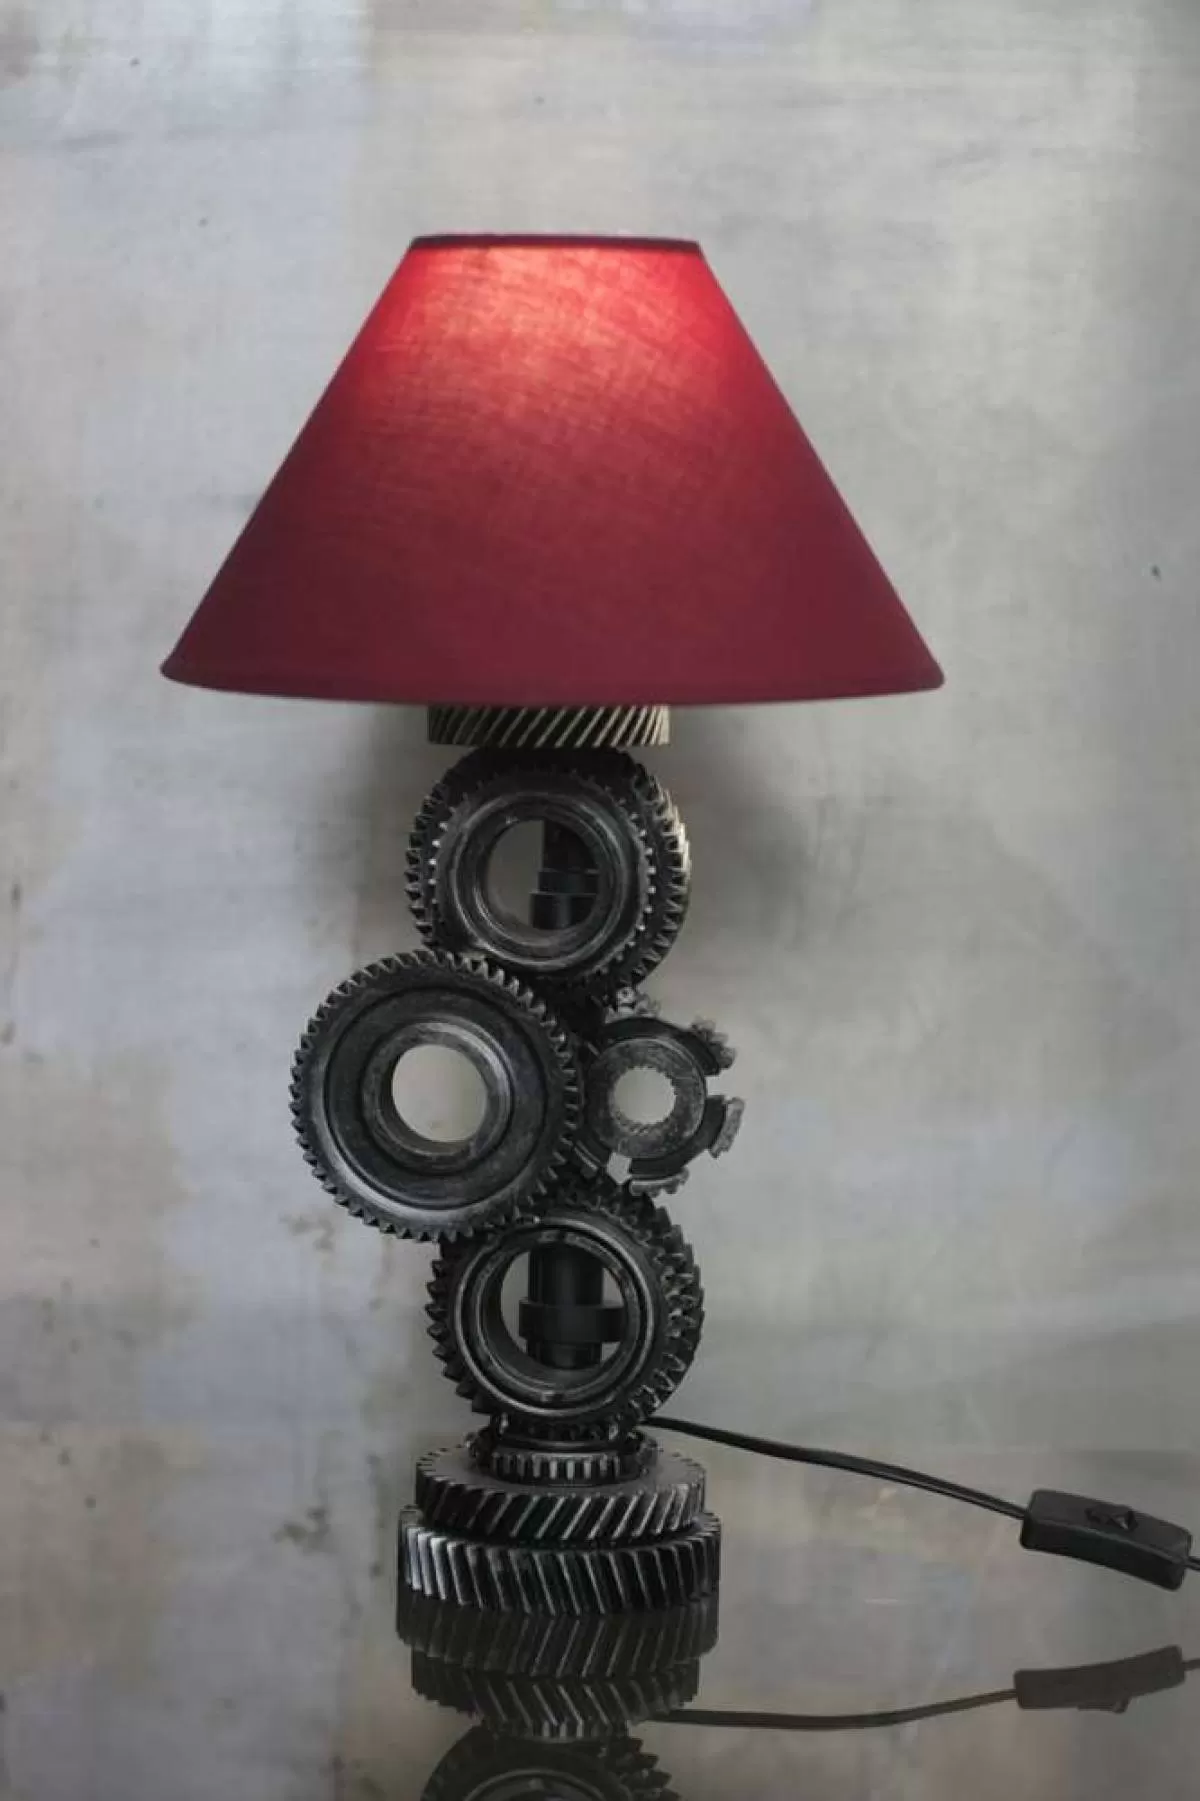 Светильник «Шестерни» с красным абажуром. Фотография 1